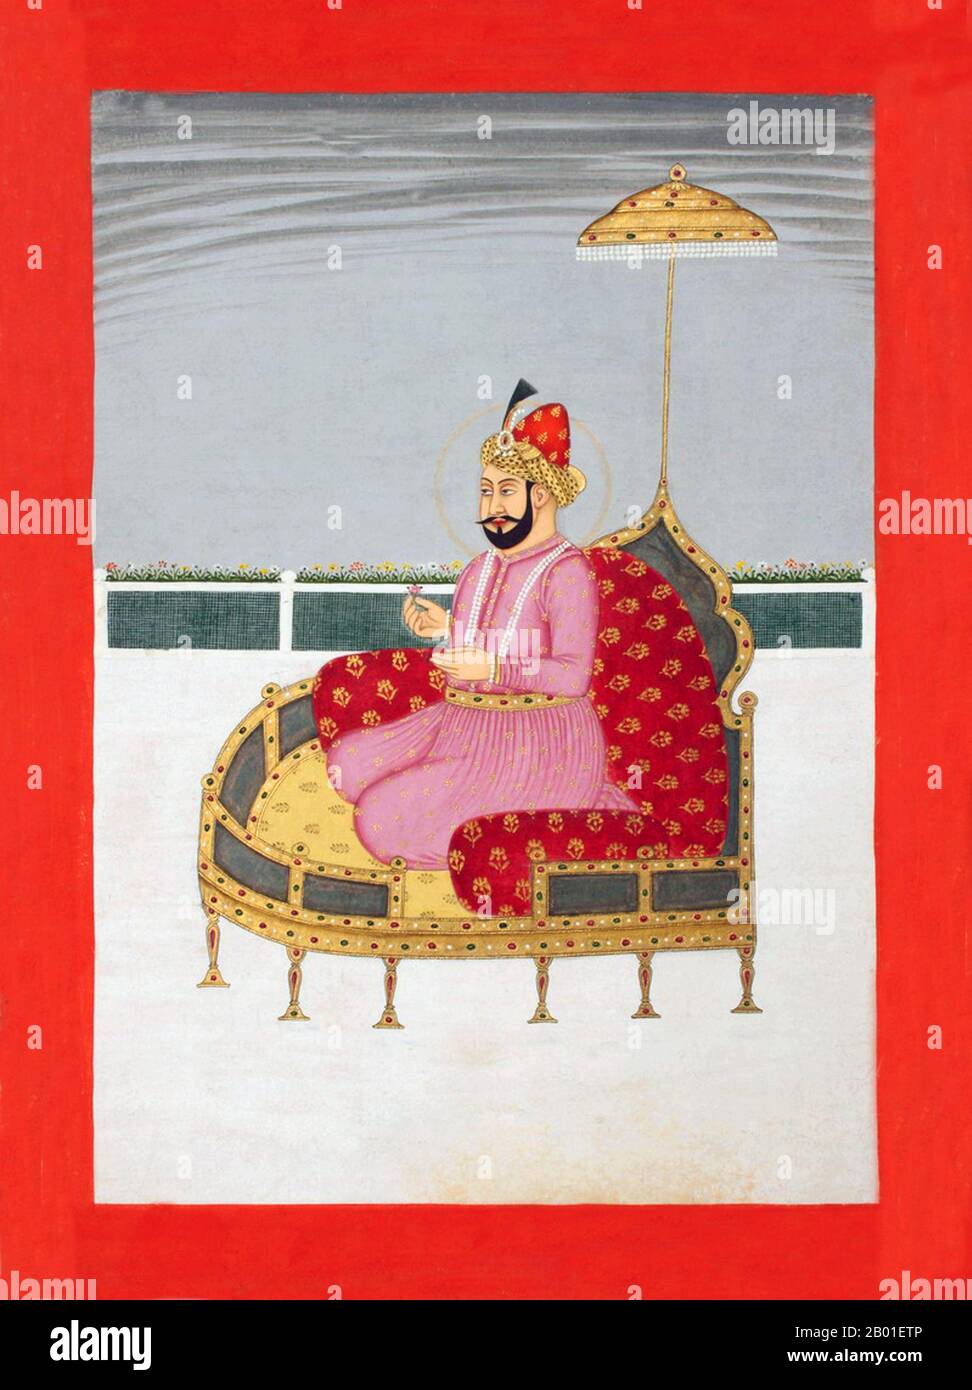 Inde: Nasir ud-din Muhammad Humayun (7 mars 1508 - 22 février 1556), 2nd Empereur Mughal, agenouillé sur un trône. Peinture miniature d'une série représentant les empereurs de Mughal, 18th siècle. Humayun (titre complet: Al-Sultan al-'Azam wal Khaqan al-Mukarram, Jam-i-Sultanat-i-haqiqi wa Majazi, Sayyid al-Salatin, Abu'l Muzaffar Nasir ud-din Muhammad Humayun Padshah Ghazi, Zillu'llah) était le deuxième jour de l'Afghanistan, 1530-1540, 1555, et l'empereur R. Mughal, 1556, le deuxième jour de l'Afghanistan, le Pakistan,, et le, le. Comme son père, Babur, il a perdu son royaume tôt, mais l'a retrouvé avec l'aide persane. Banque D'Images